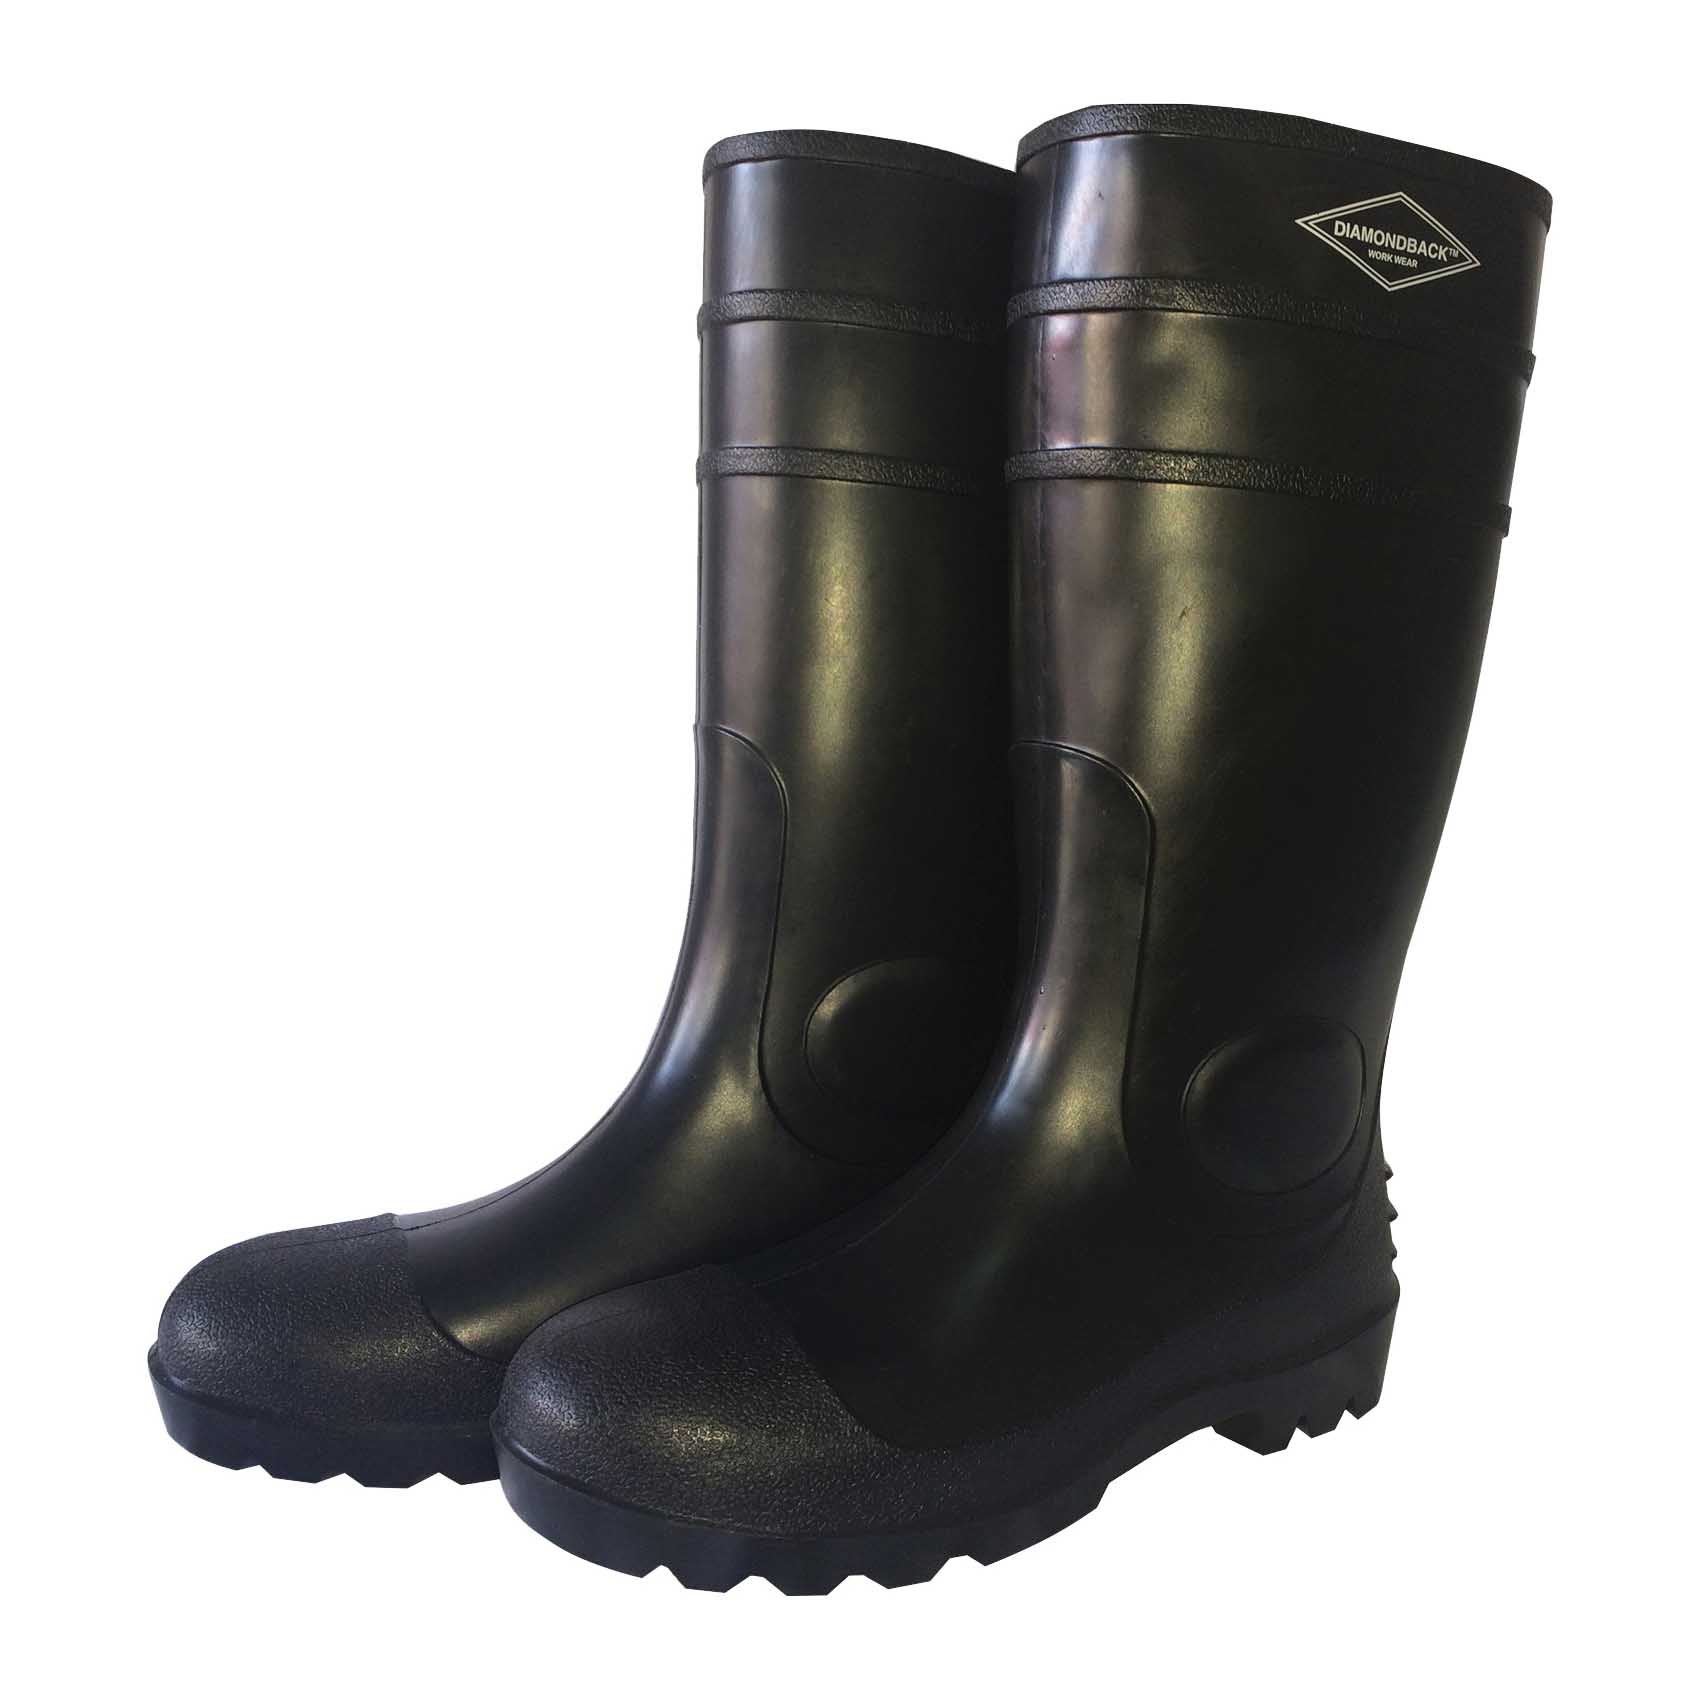 L-G06B10 Knee Boots, 10, Black, PVC Upper, Slip on Boots Closure